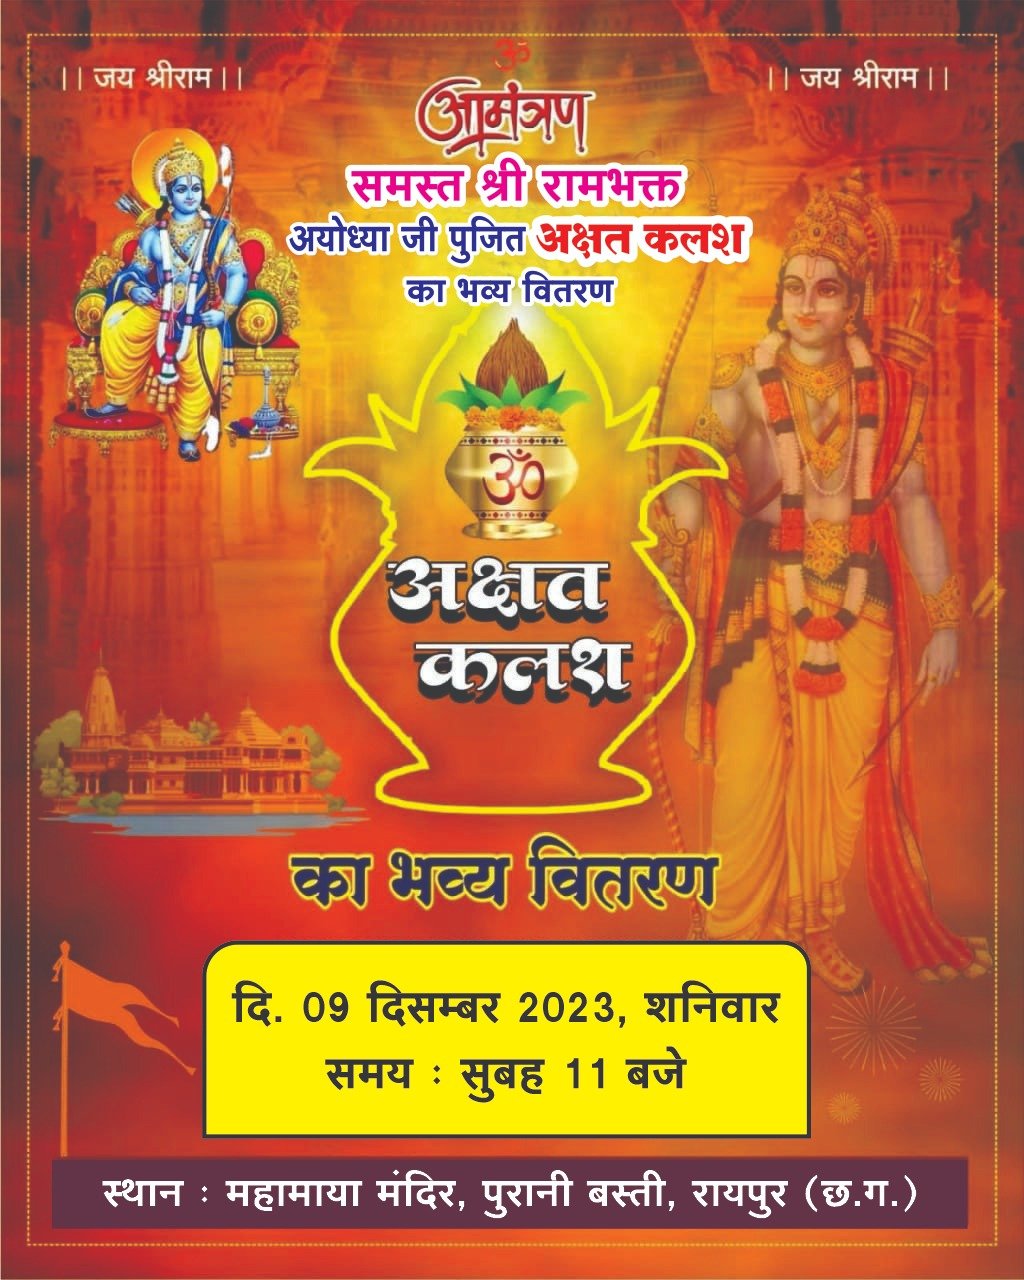 WhatsApp Image 2023 12 08 at 10.14.07 PM हर्षाेल्लास के साथ मनाया जाएगा प्रभु राम का प्राणप्रतिष्ठा महोत्सव